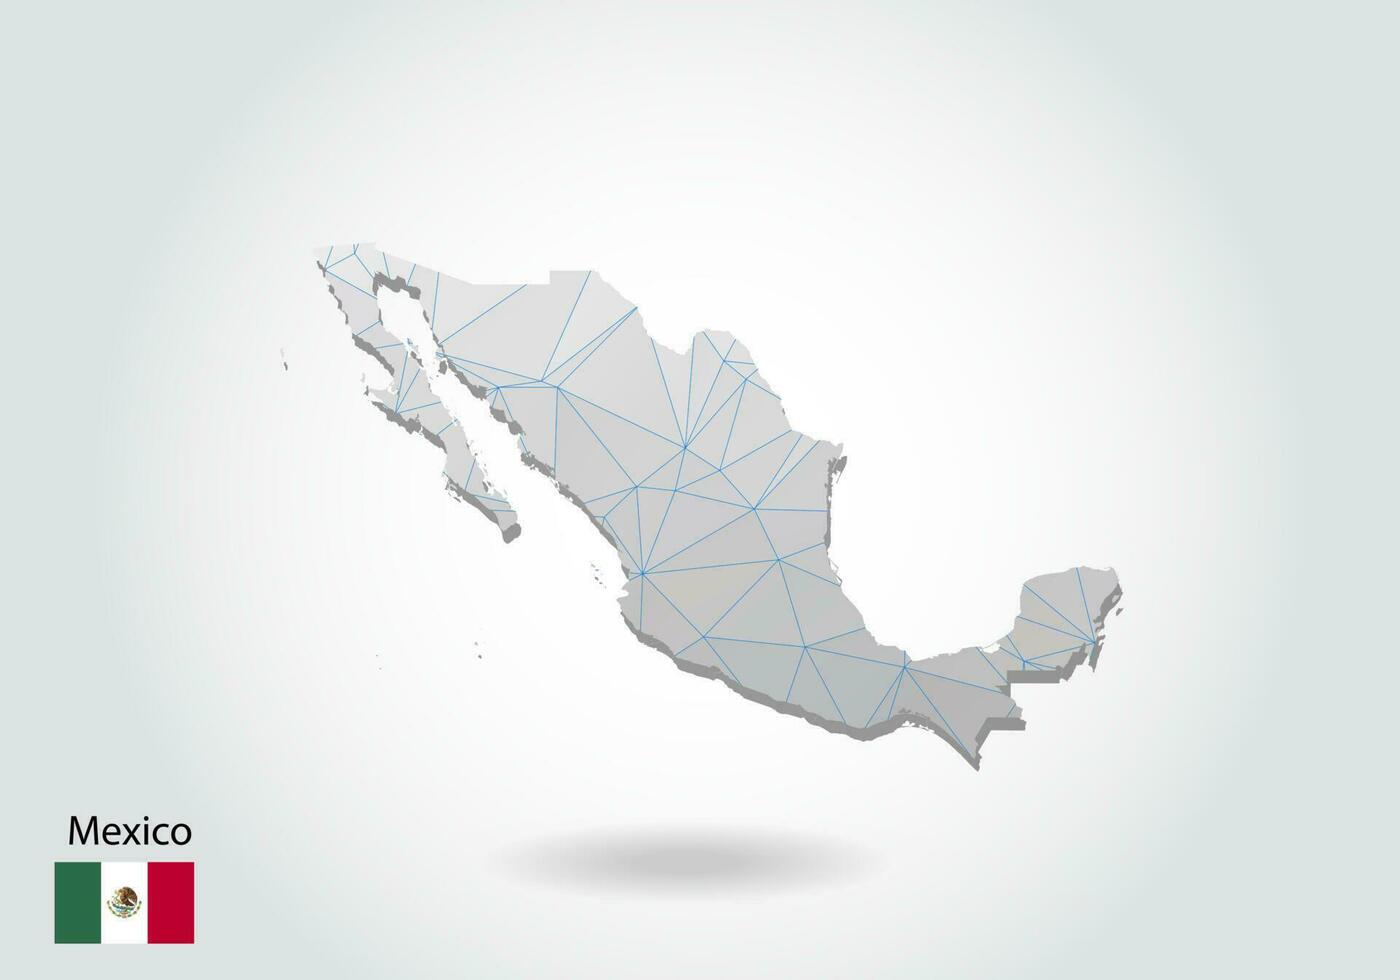 vektor karta över Mexiko med trendiga trianglar design i polygonal stil på mörk bakgrund, kartform i modern 3d papperssnitt konst stil. skiktad pappersutskärningsdesign.